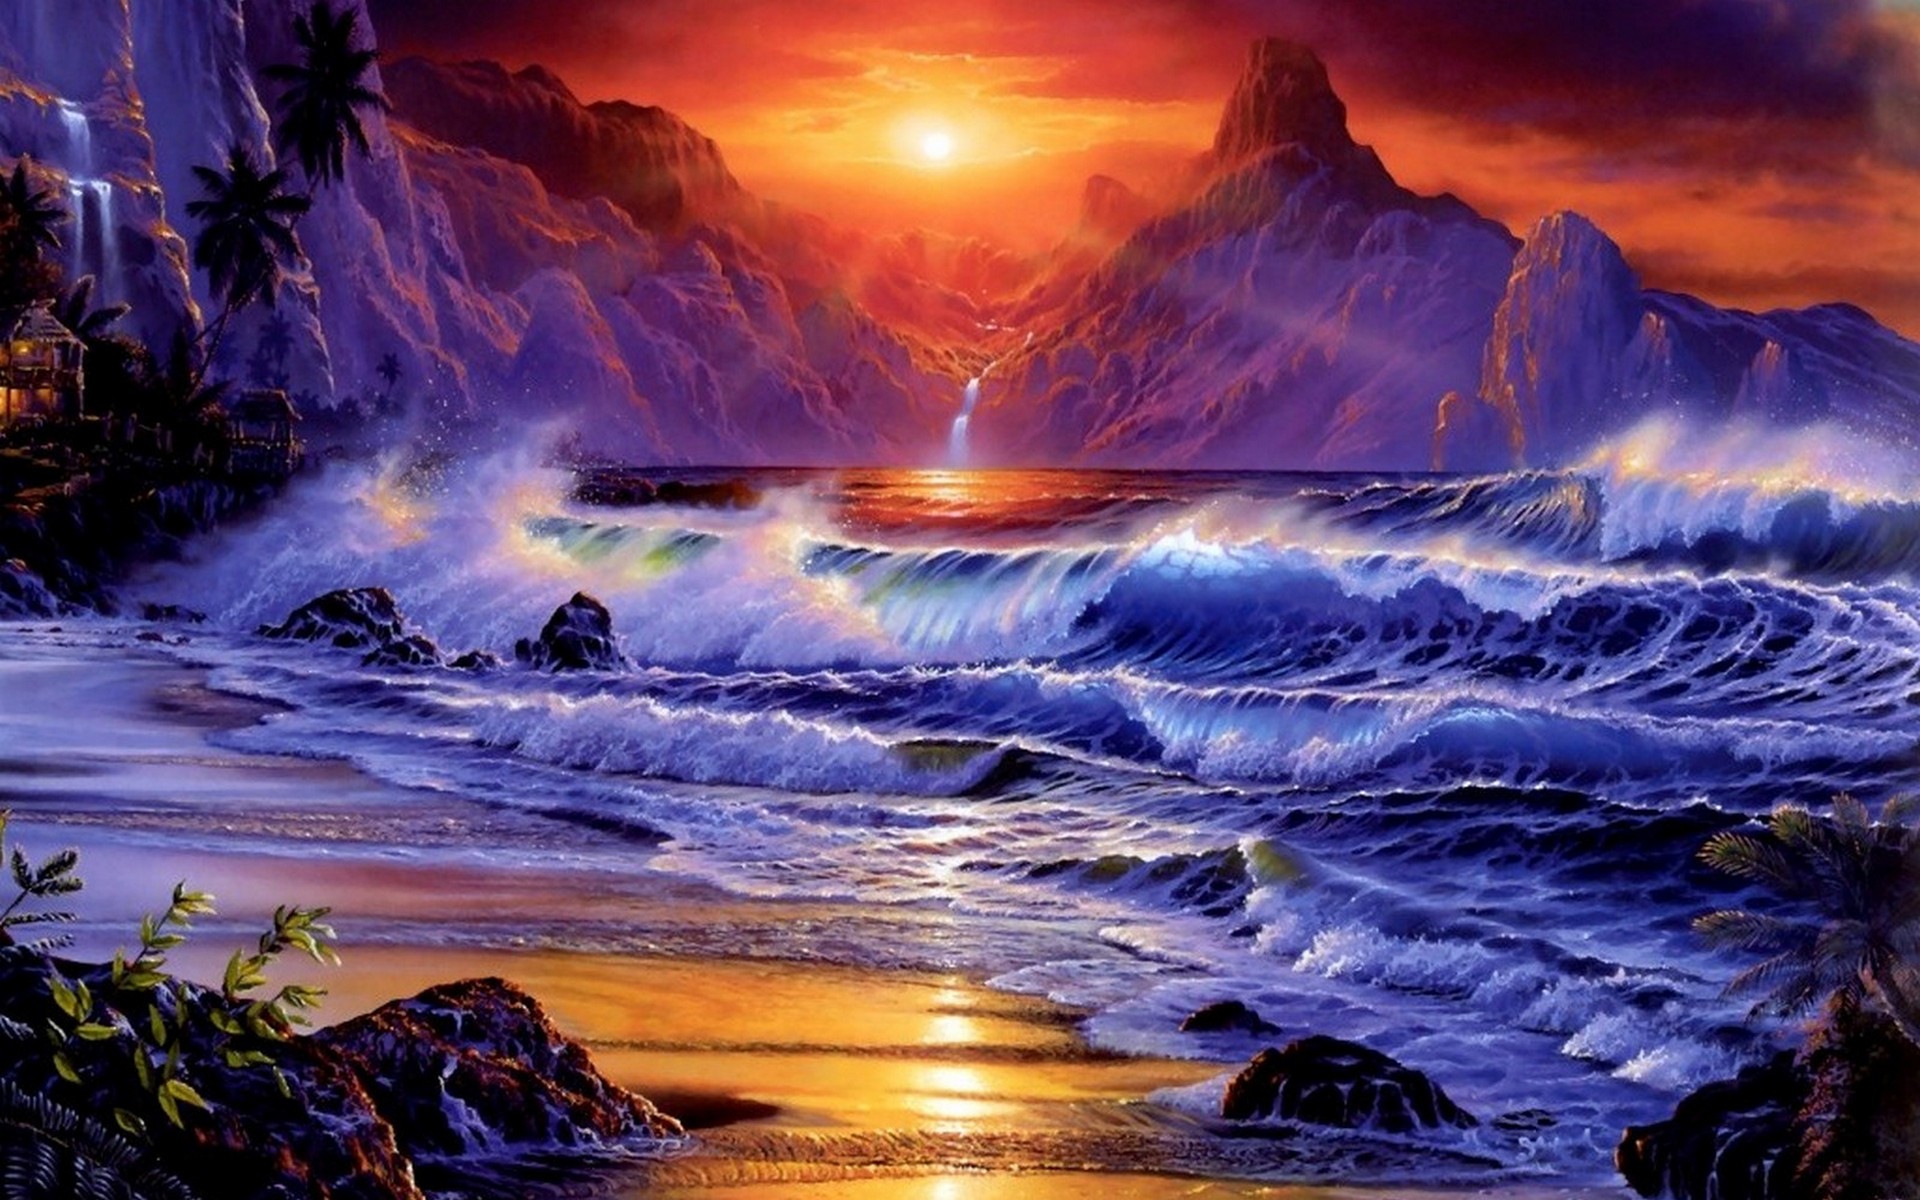 Ocean Sunset Beach Waves   1920x1200 Wallpaper   teahubio